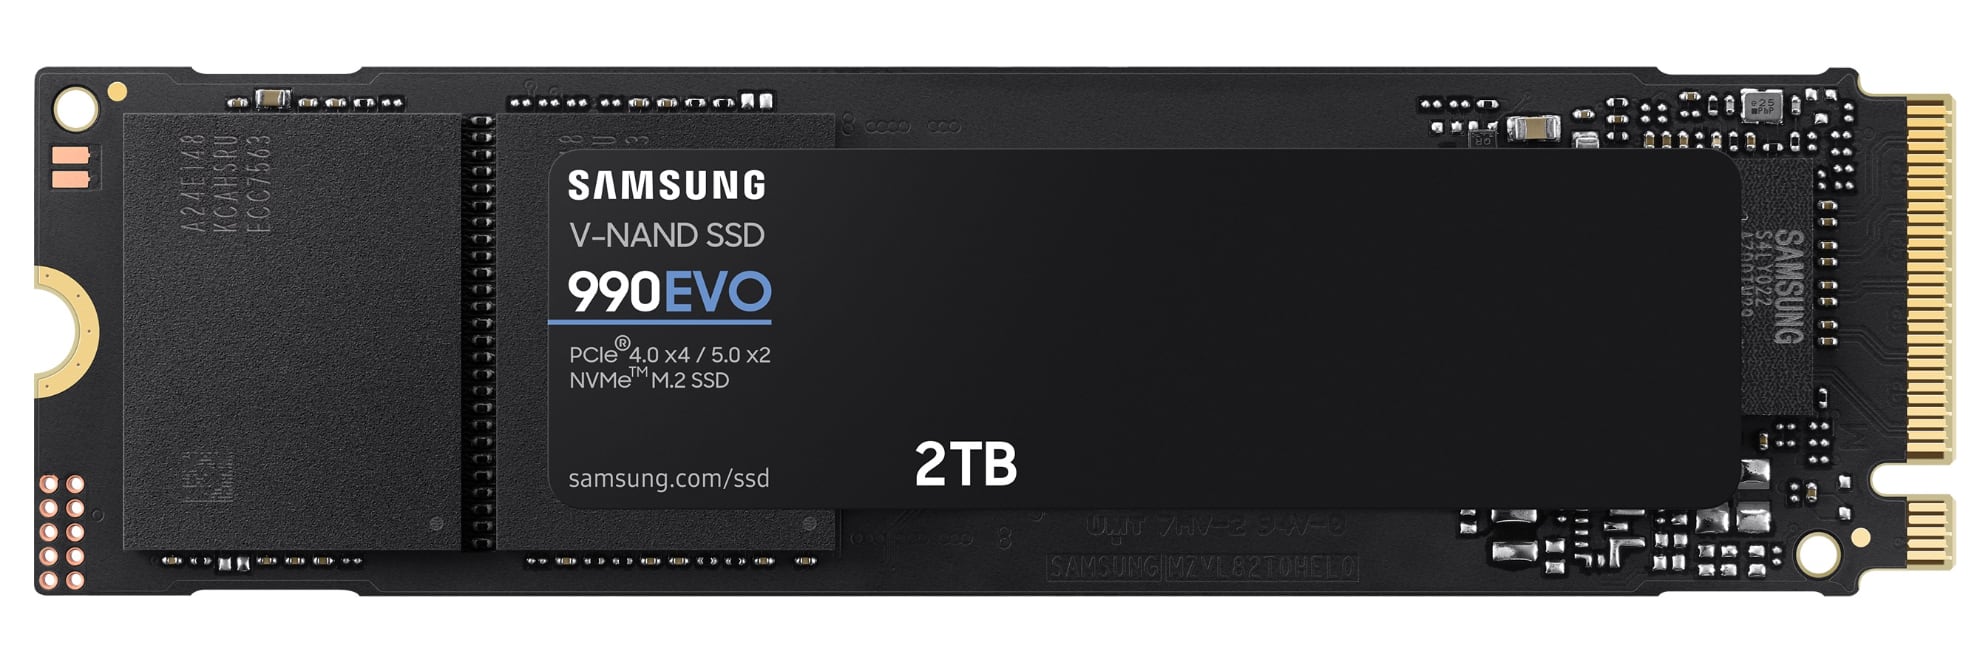 Samsung anuncia el SSD 990 EVO de alta velocidad, costará 210 dólares los 2 TB-2